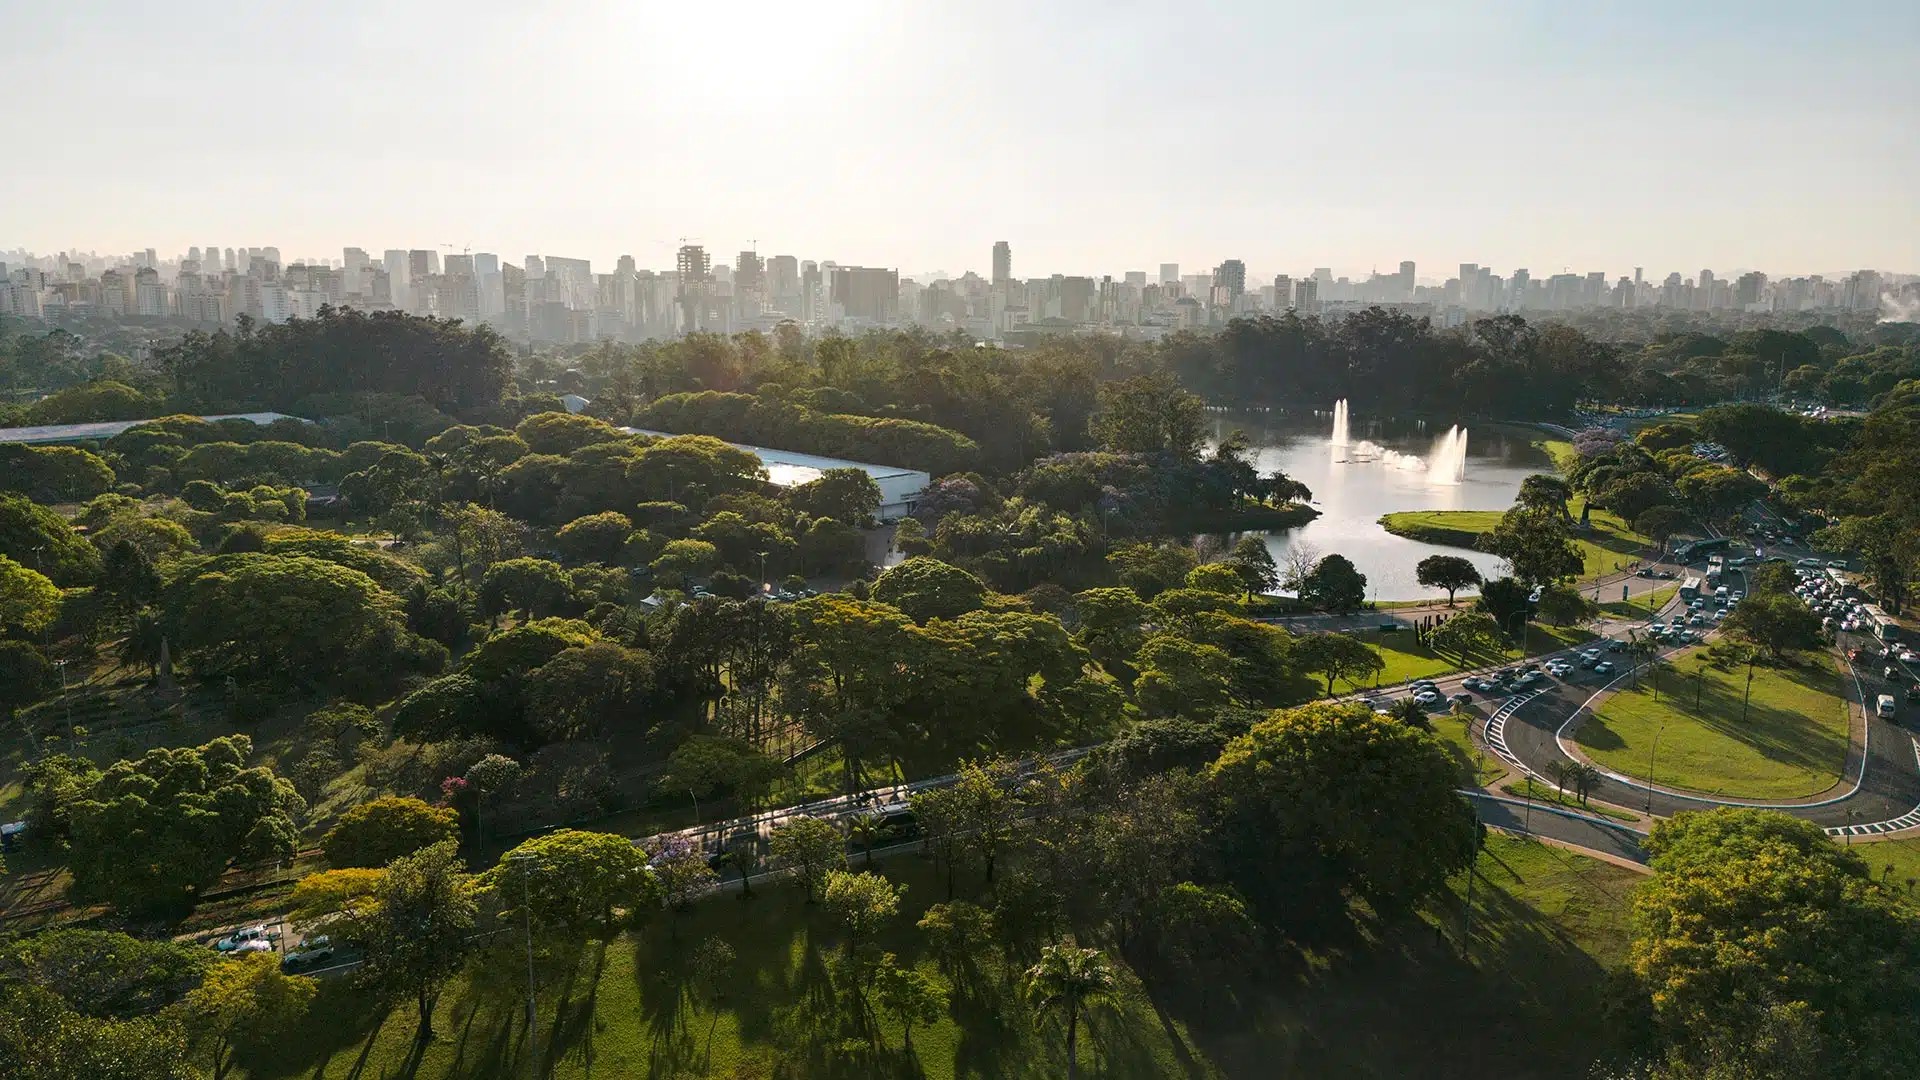 Vista aerea del parque Ibirapuera